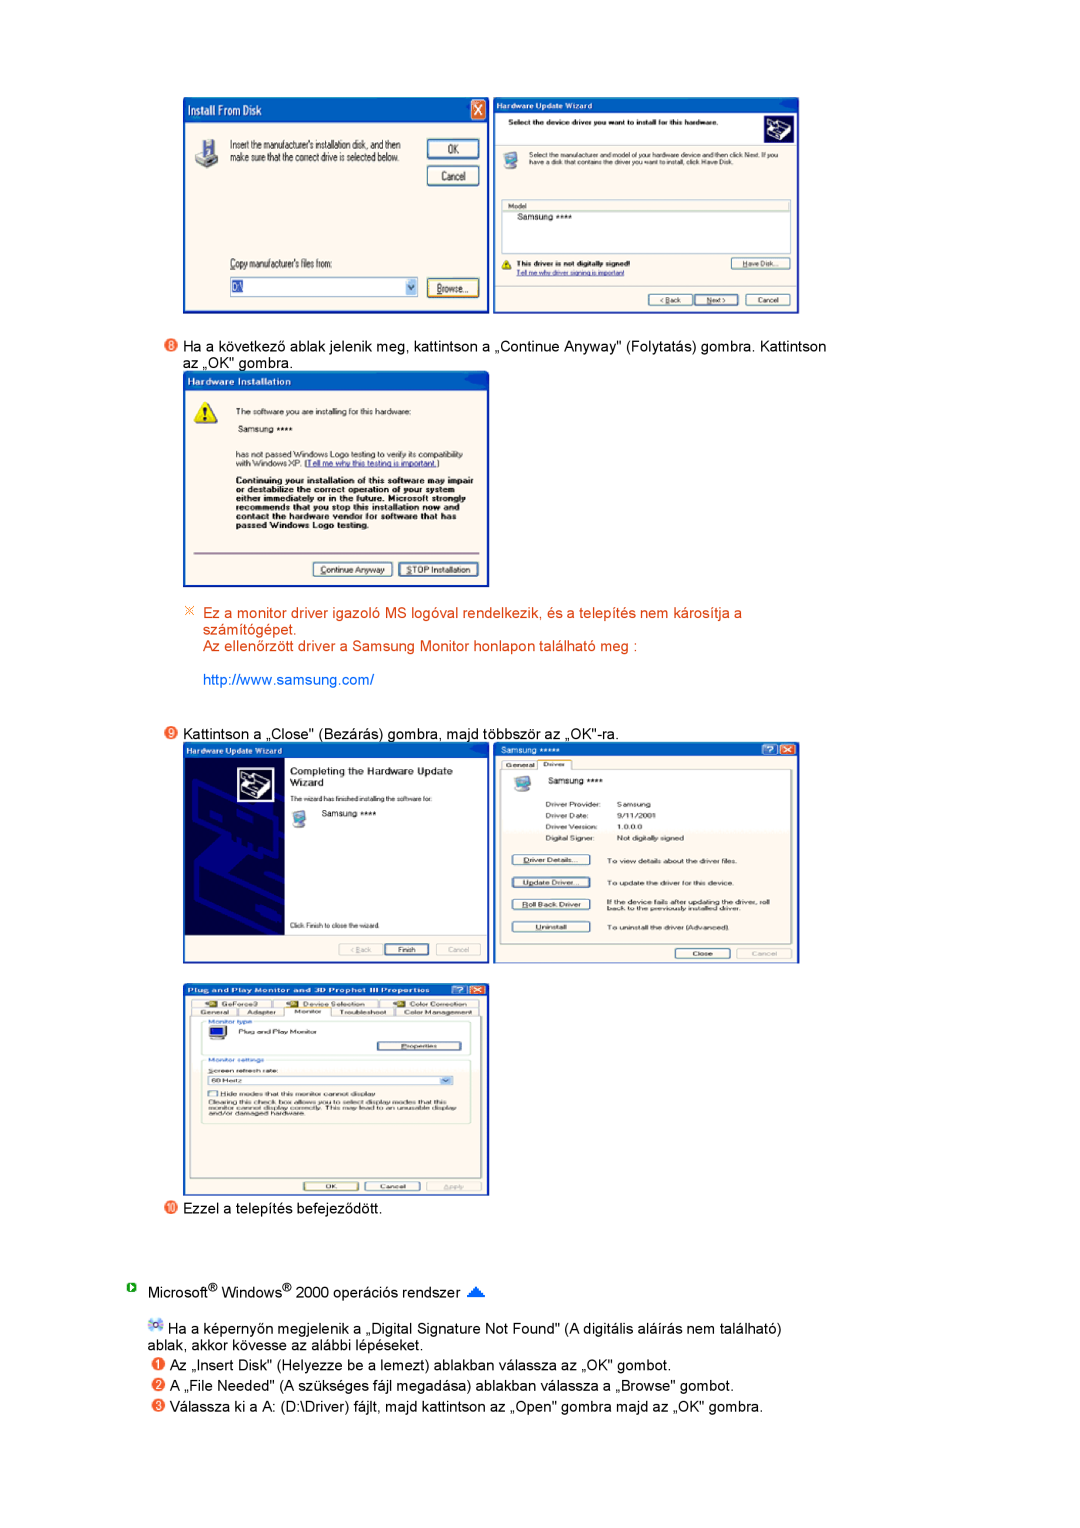 Samsung LS20PEBSFV/EDC, LS22PEBSFV/EDC, LS22PEBSFV/TRU manual Az ellenőrzött driver a Samsung Monitor honlapon található meg 